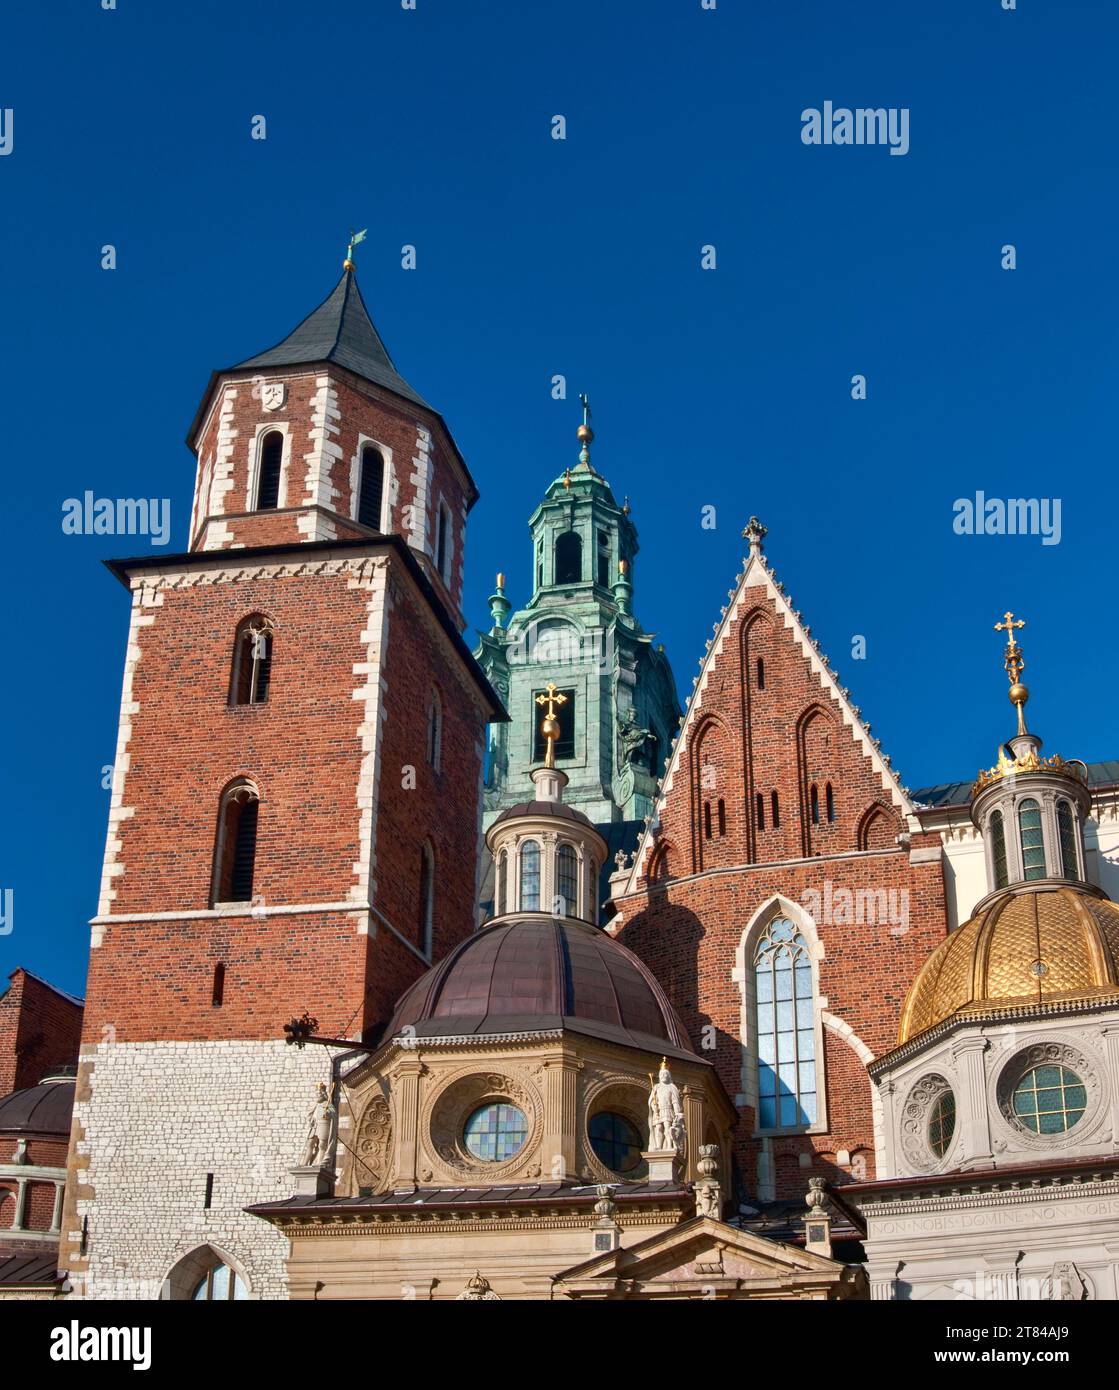 Cathédrale du Wawel, avec Tour des cloches d'argent, Chapelle Sainte Croix et Chapelle Sigismond en face, Cracovie, Pologne Banque D'Images